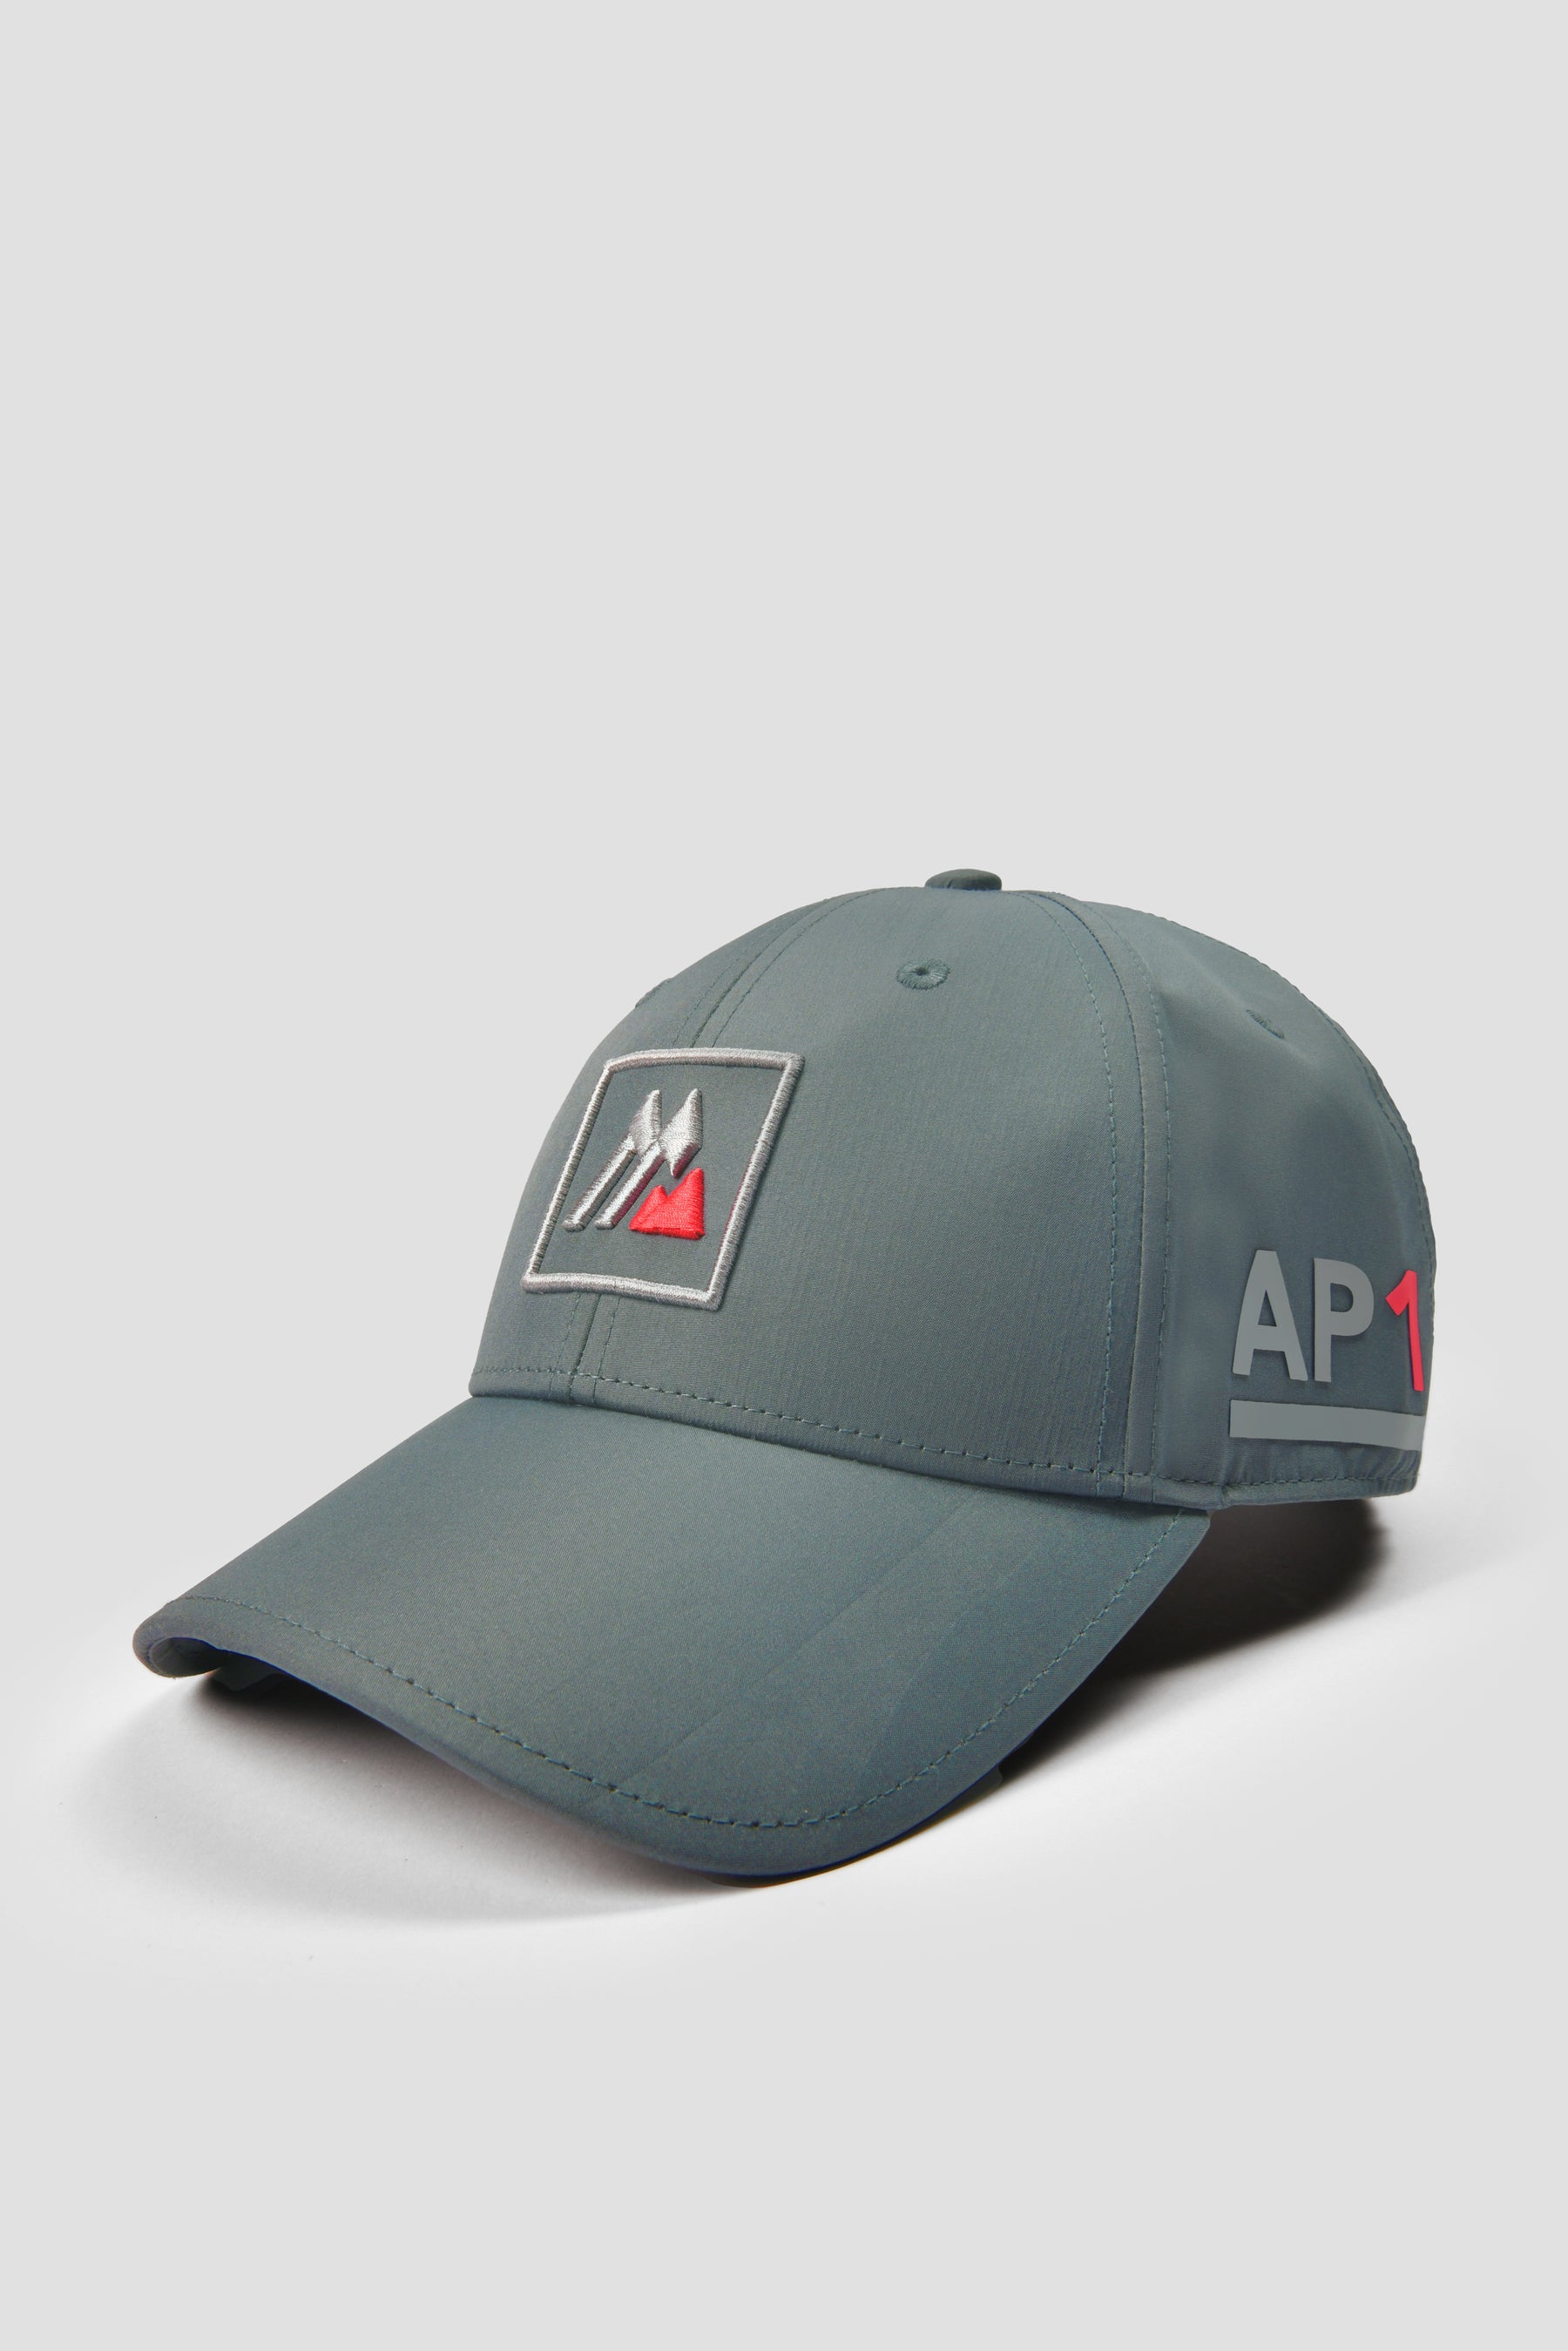 AP1 Tech Cap - Cement Grey/Platinum Grey/Cardinal Red